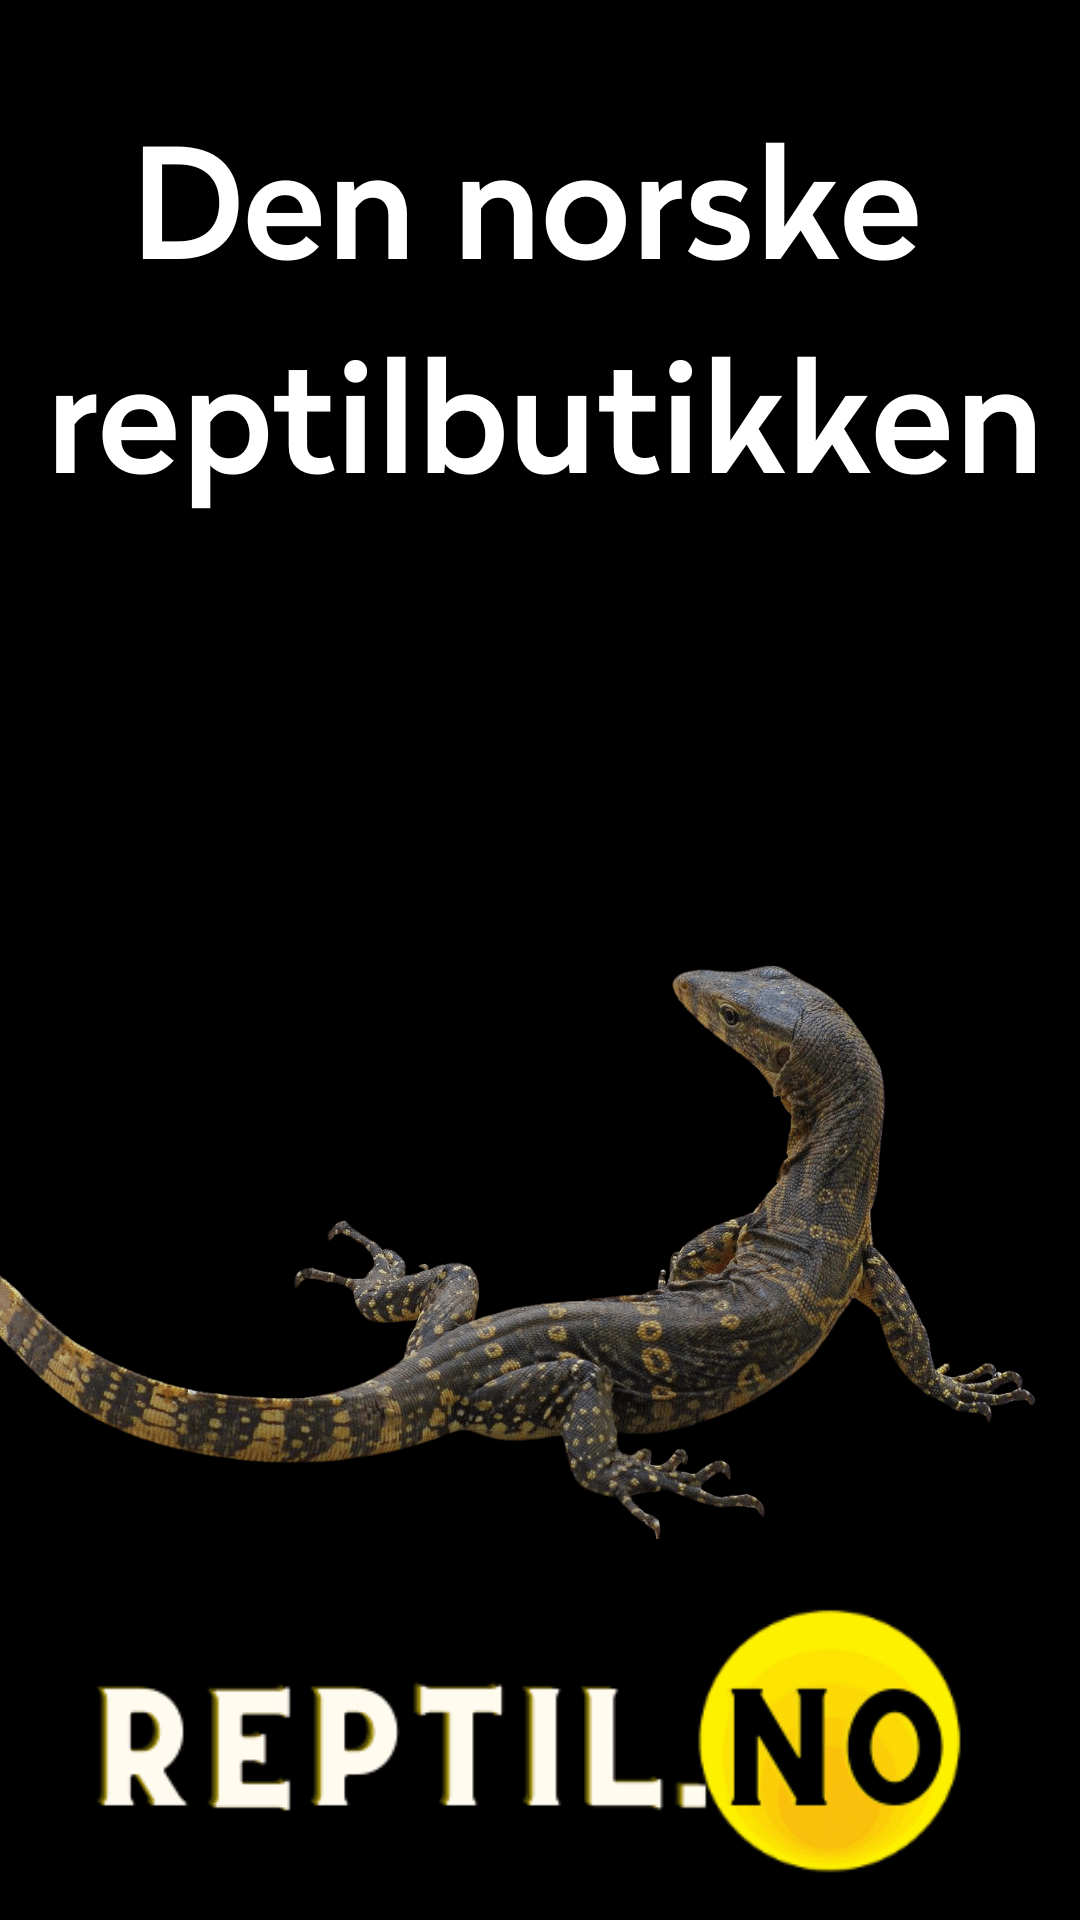 Tropehagen reptil